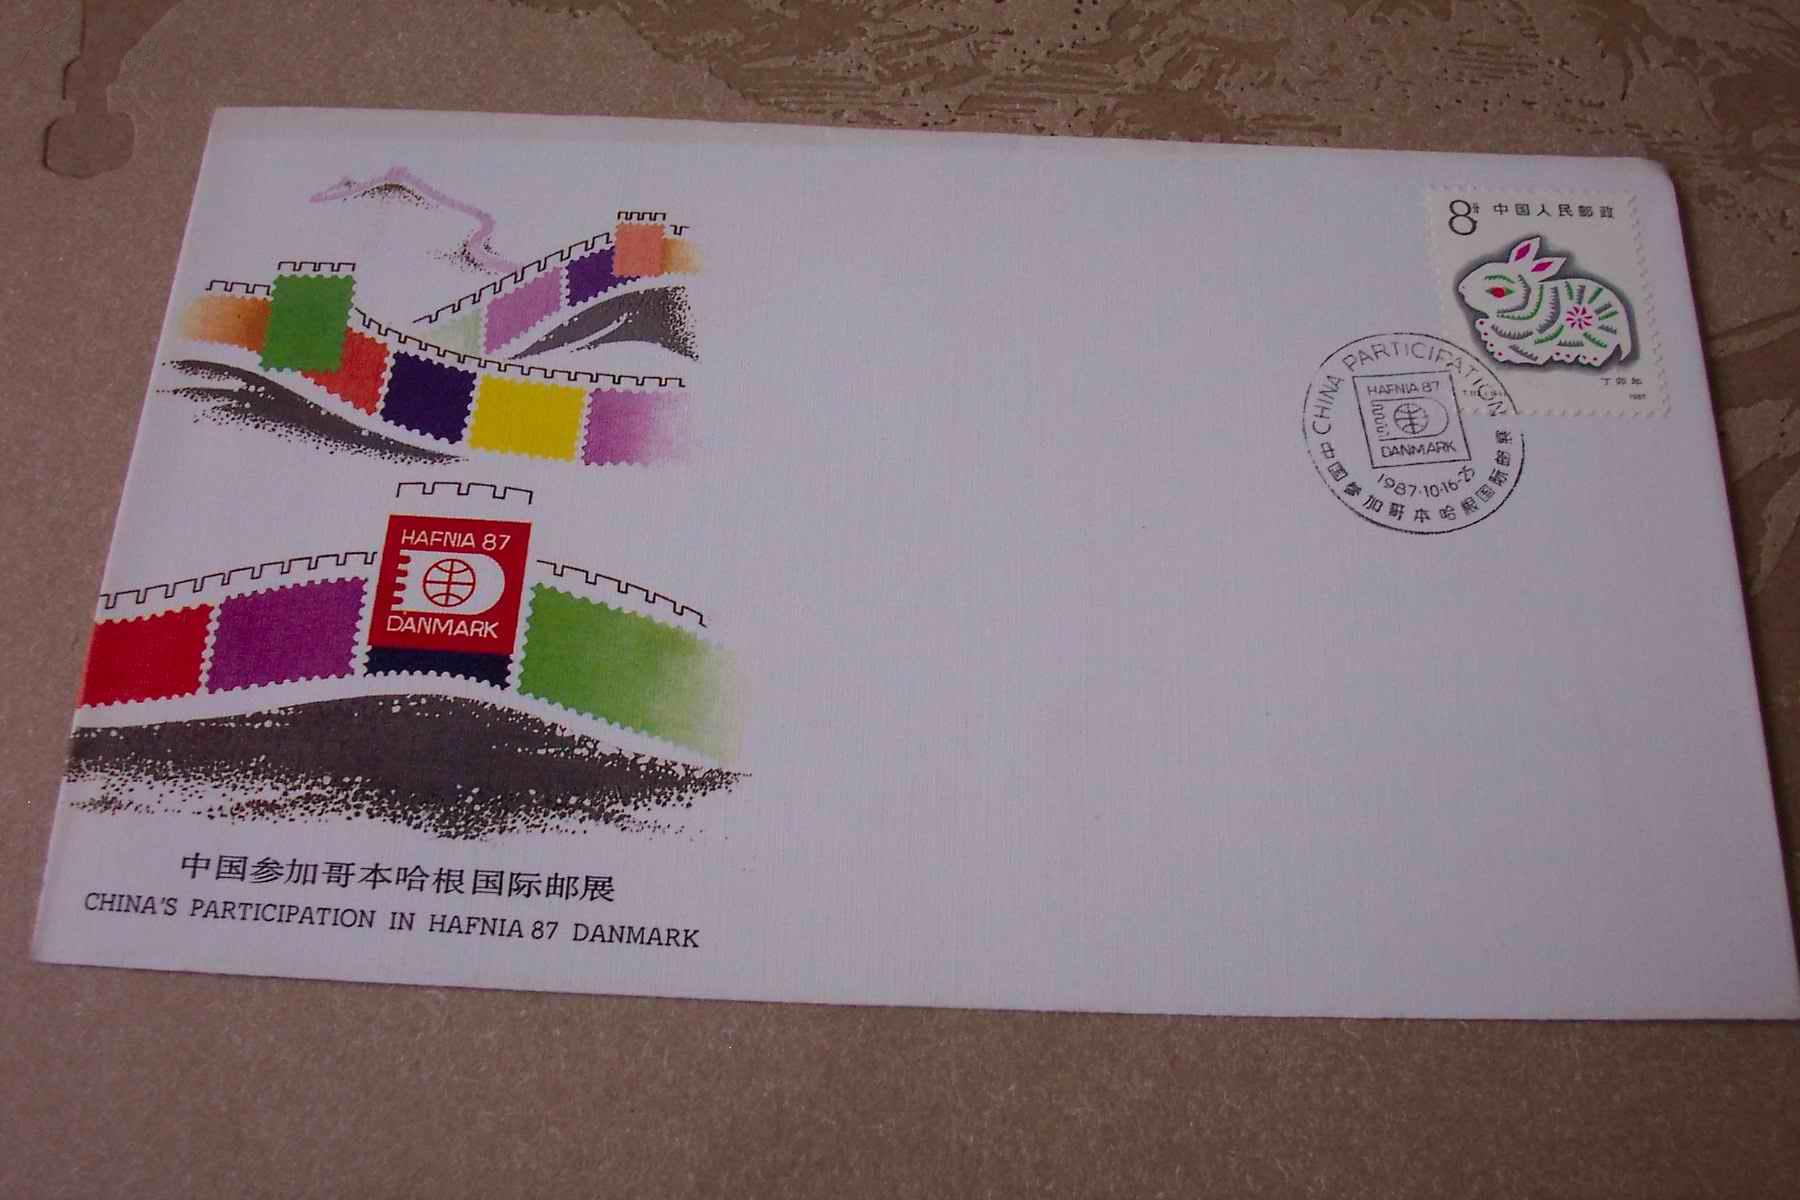 丹麦国际集邮展览“HAFNIA187”-纪念封